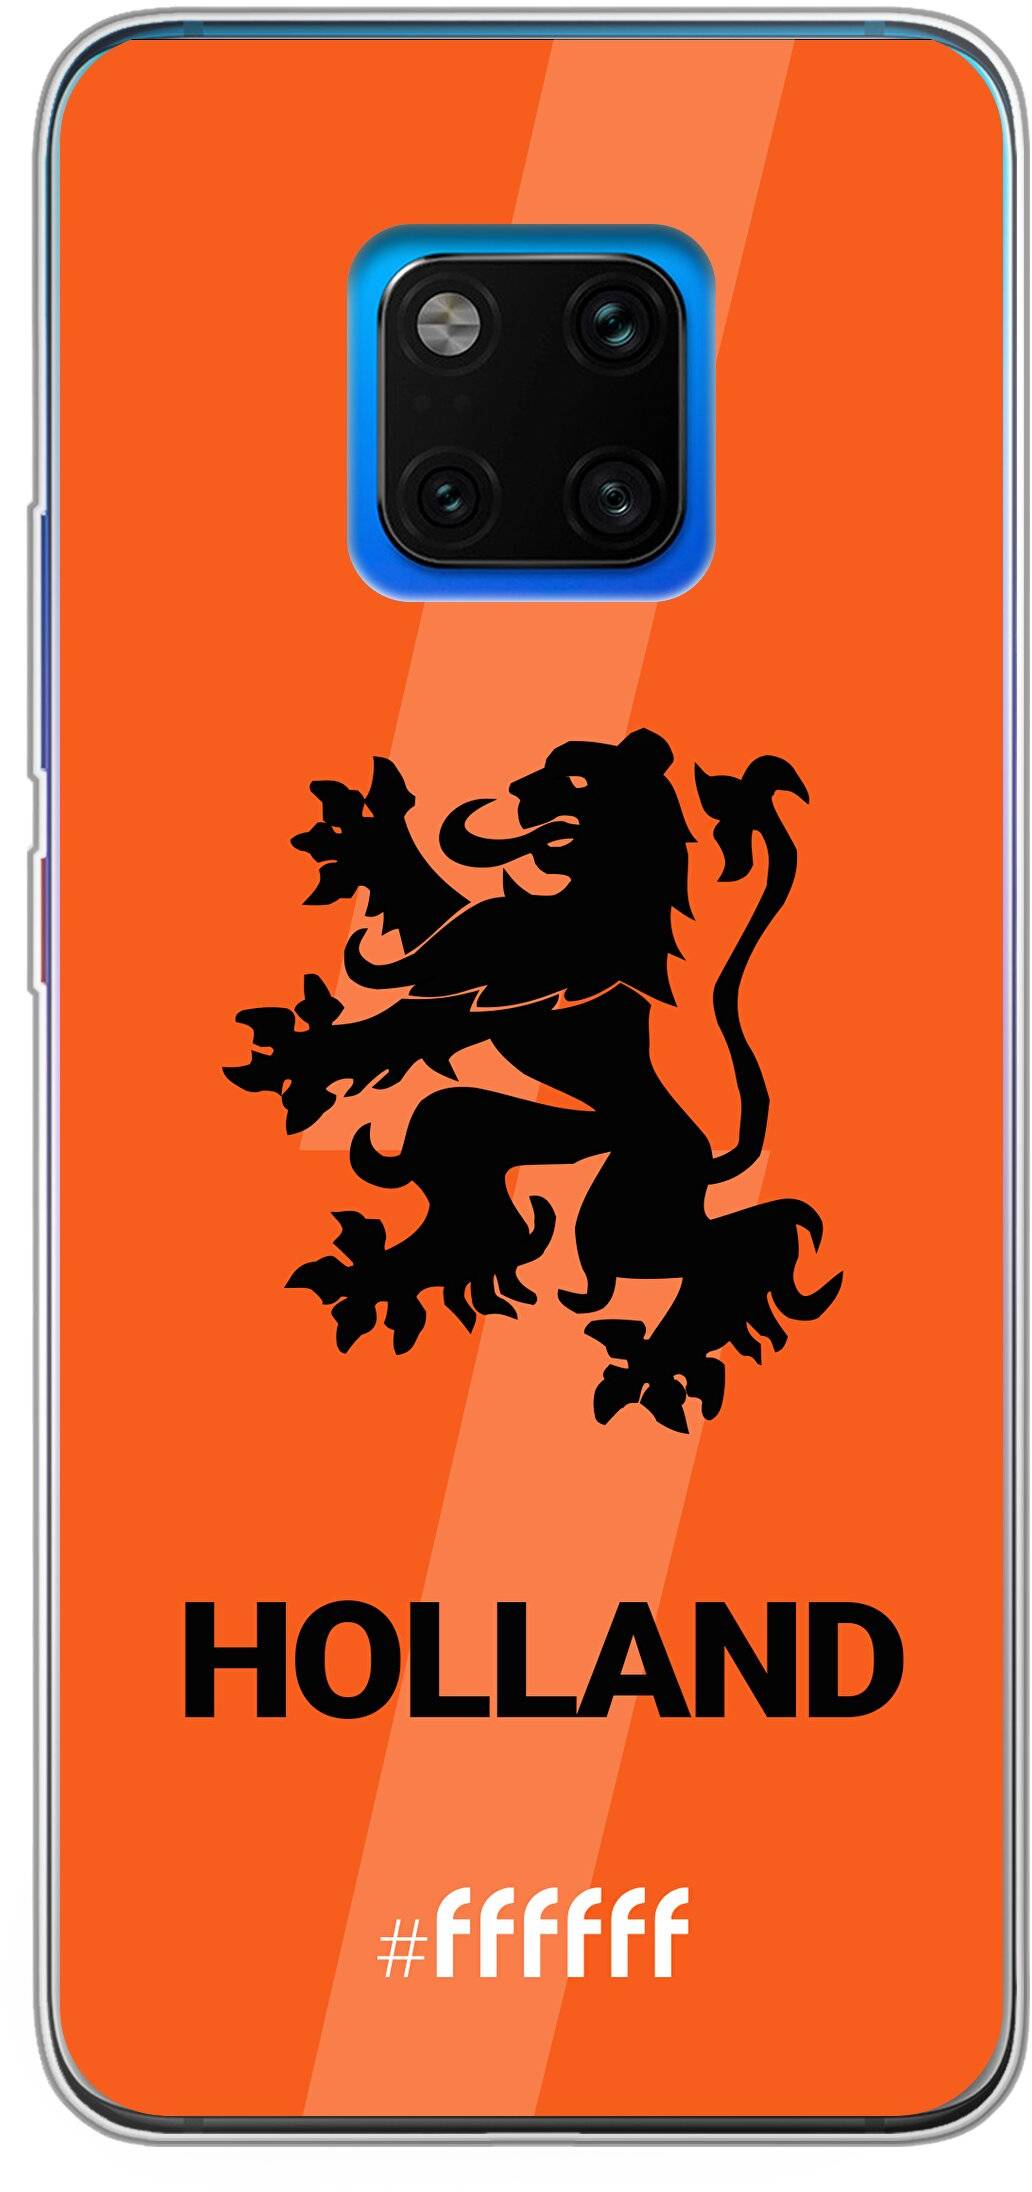 Nederlands Elftal - Holland Mate 20 Pro